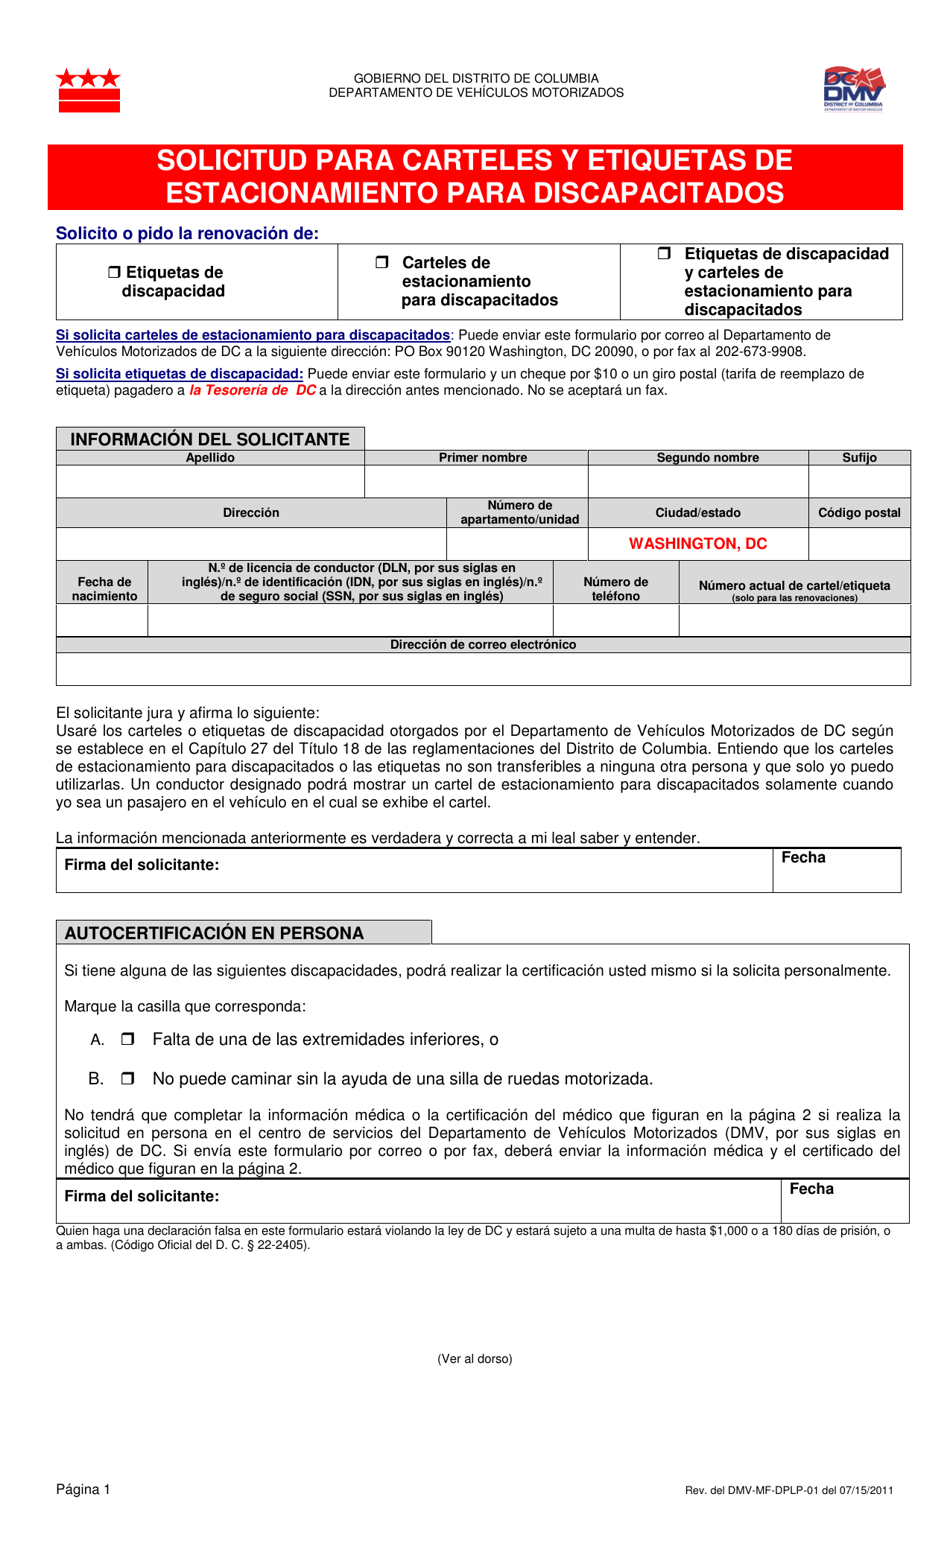 Formulario DMV-MF-DPLP-01 Solicitud Para Carteles Y Etiquetas De Estacionamiento Para Discapacitados - Washington, D.C. (Spanish), Page 1